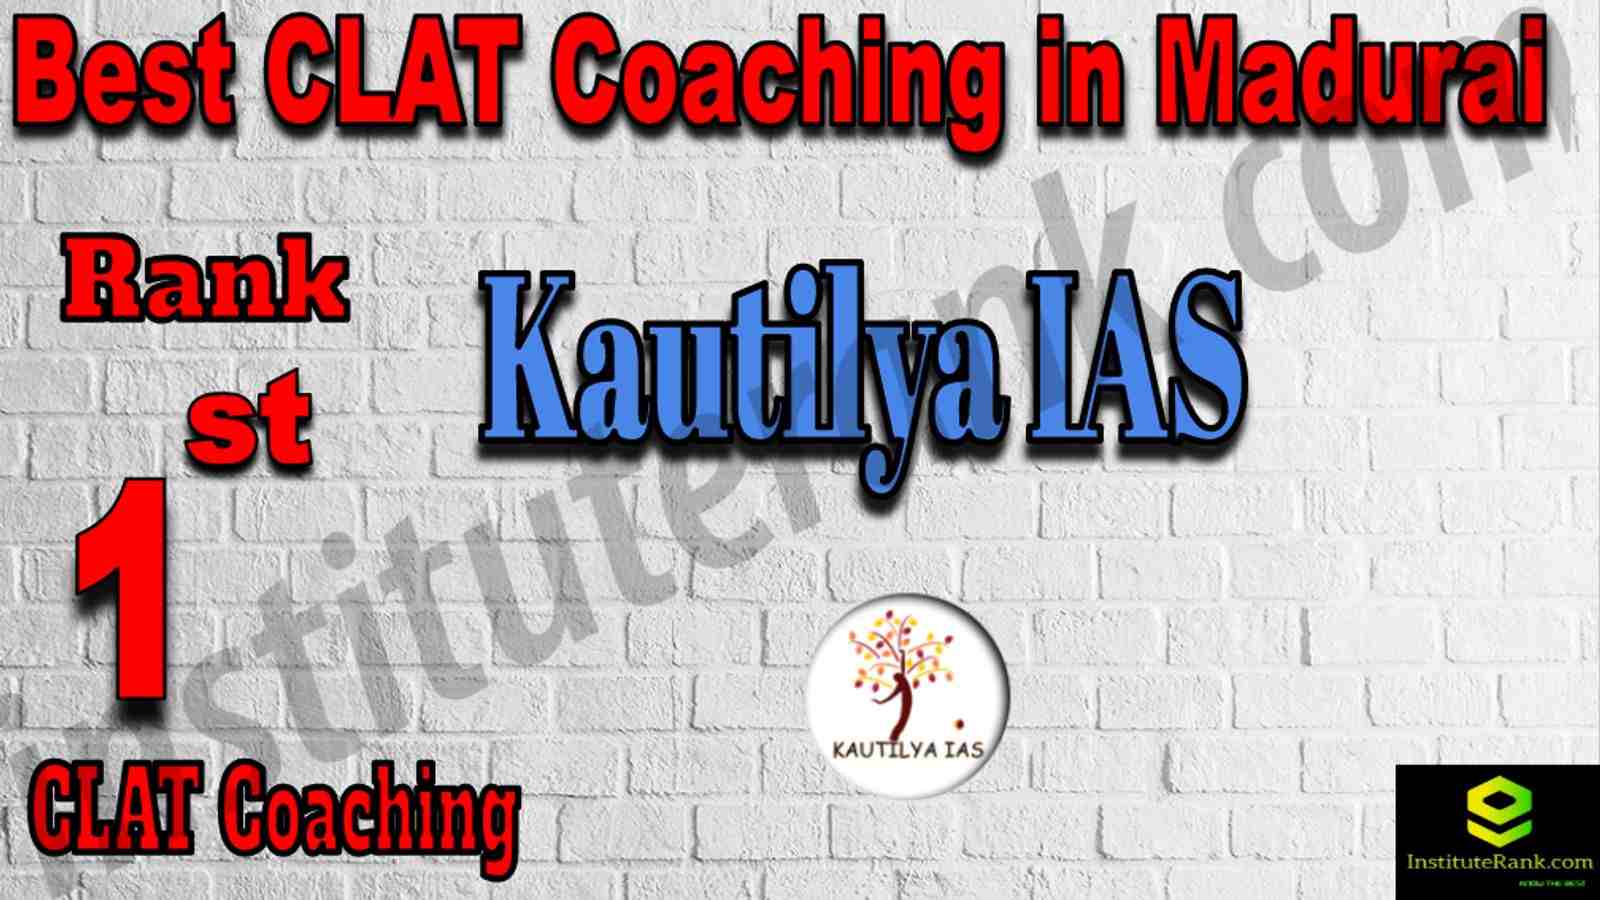 1st Best CALT Coaching in Madurai